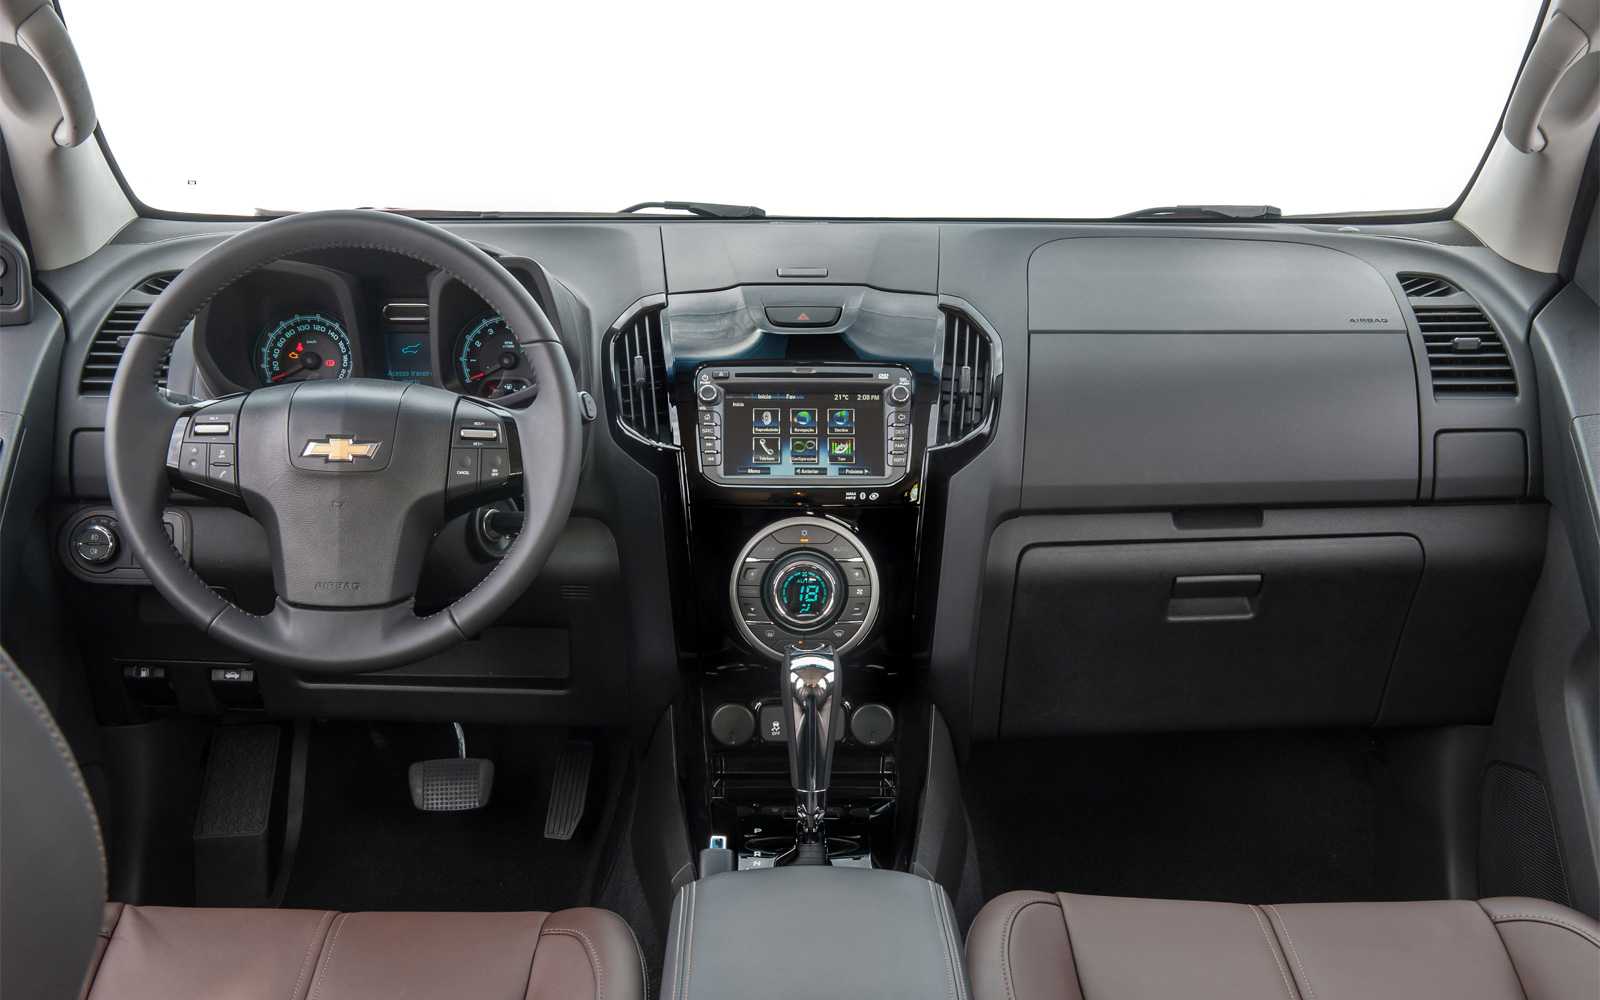 Chevrolet trailblazer 2.8, 4.2, 5.3 реальные отзывы о расходе топлива: бензина и дизеля на автомате и механике